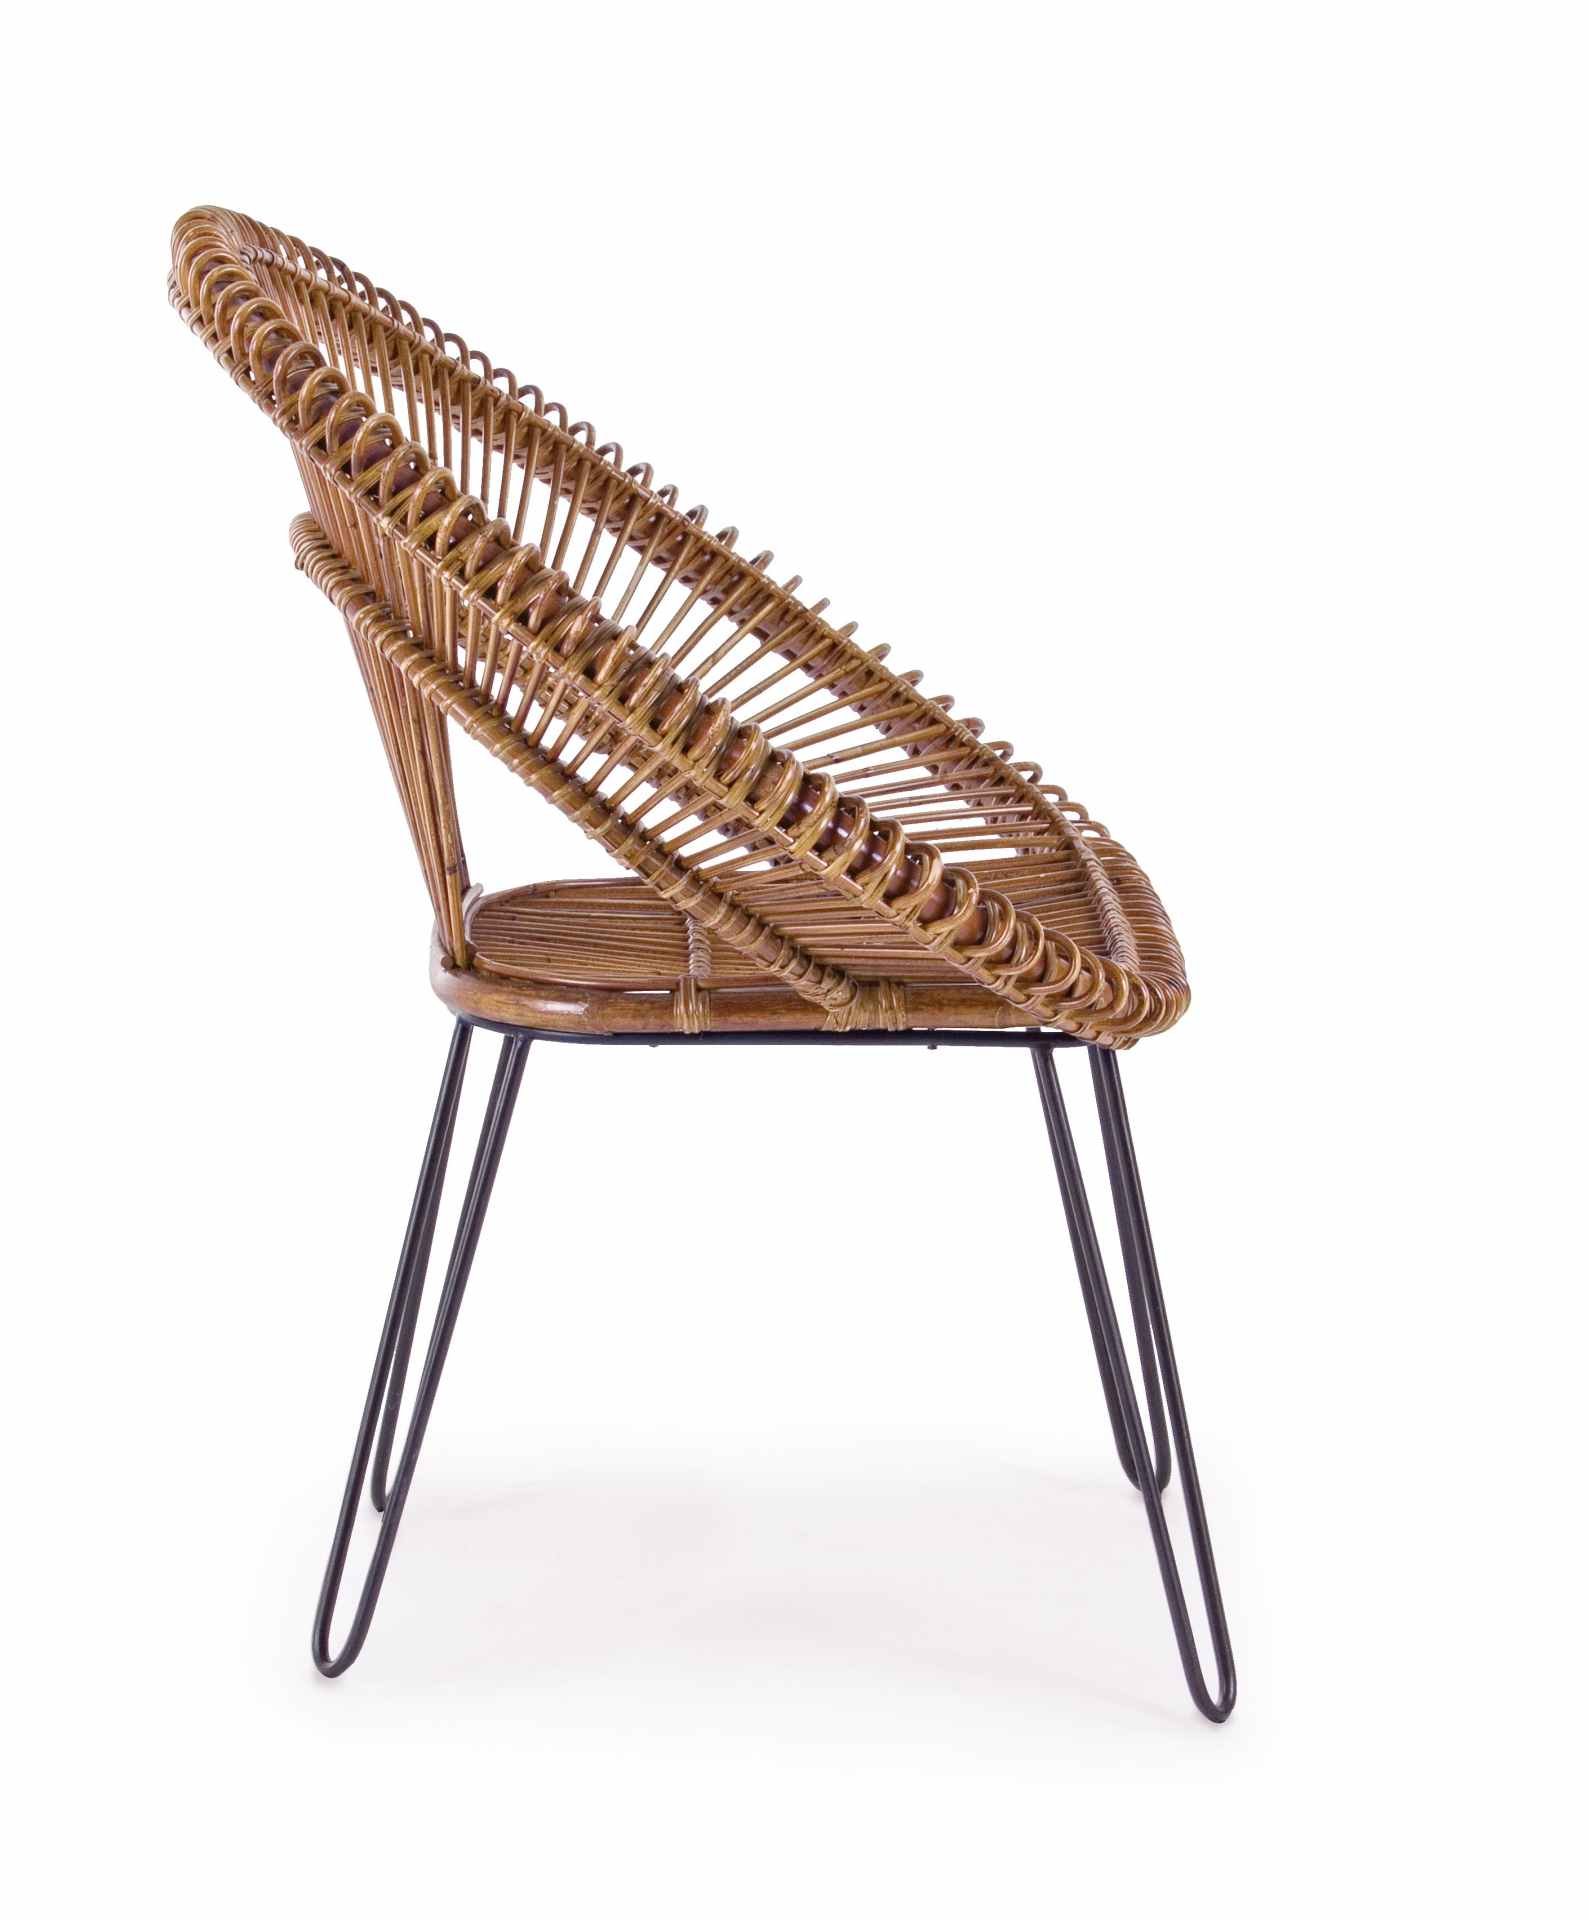 Der Sessel Esteban überzeugt mit seinem klassischen Design. Gefertigt wurde er aus Rattan, welches einen braunen Farbton besitzt. Das Gestell ist aus Metall und hat eine schwarze Farbe. Der Sessel besitzt eine Sitzhöhe von 45 cm. Die Breite beträgt 83 cm.